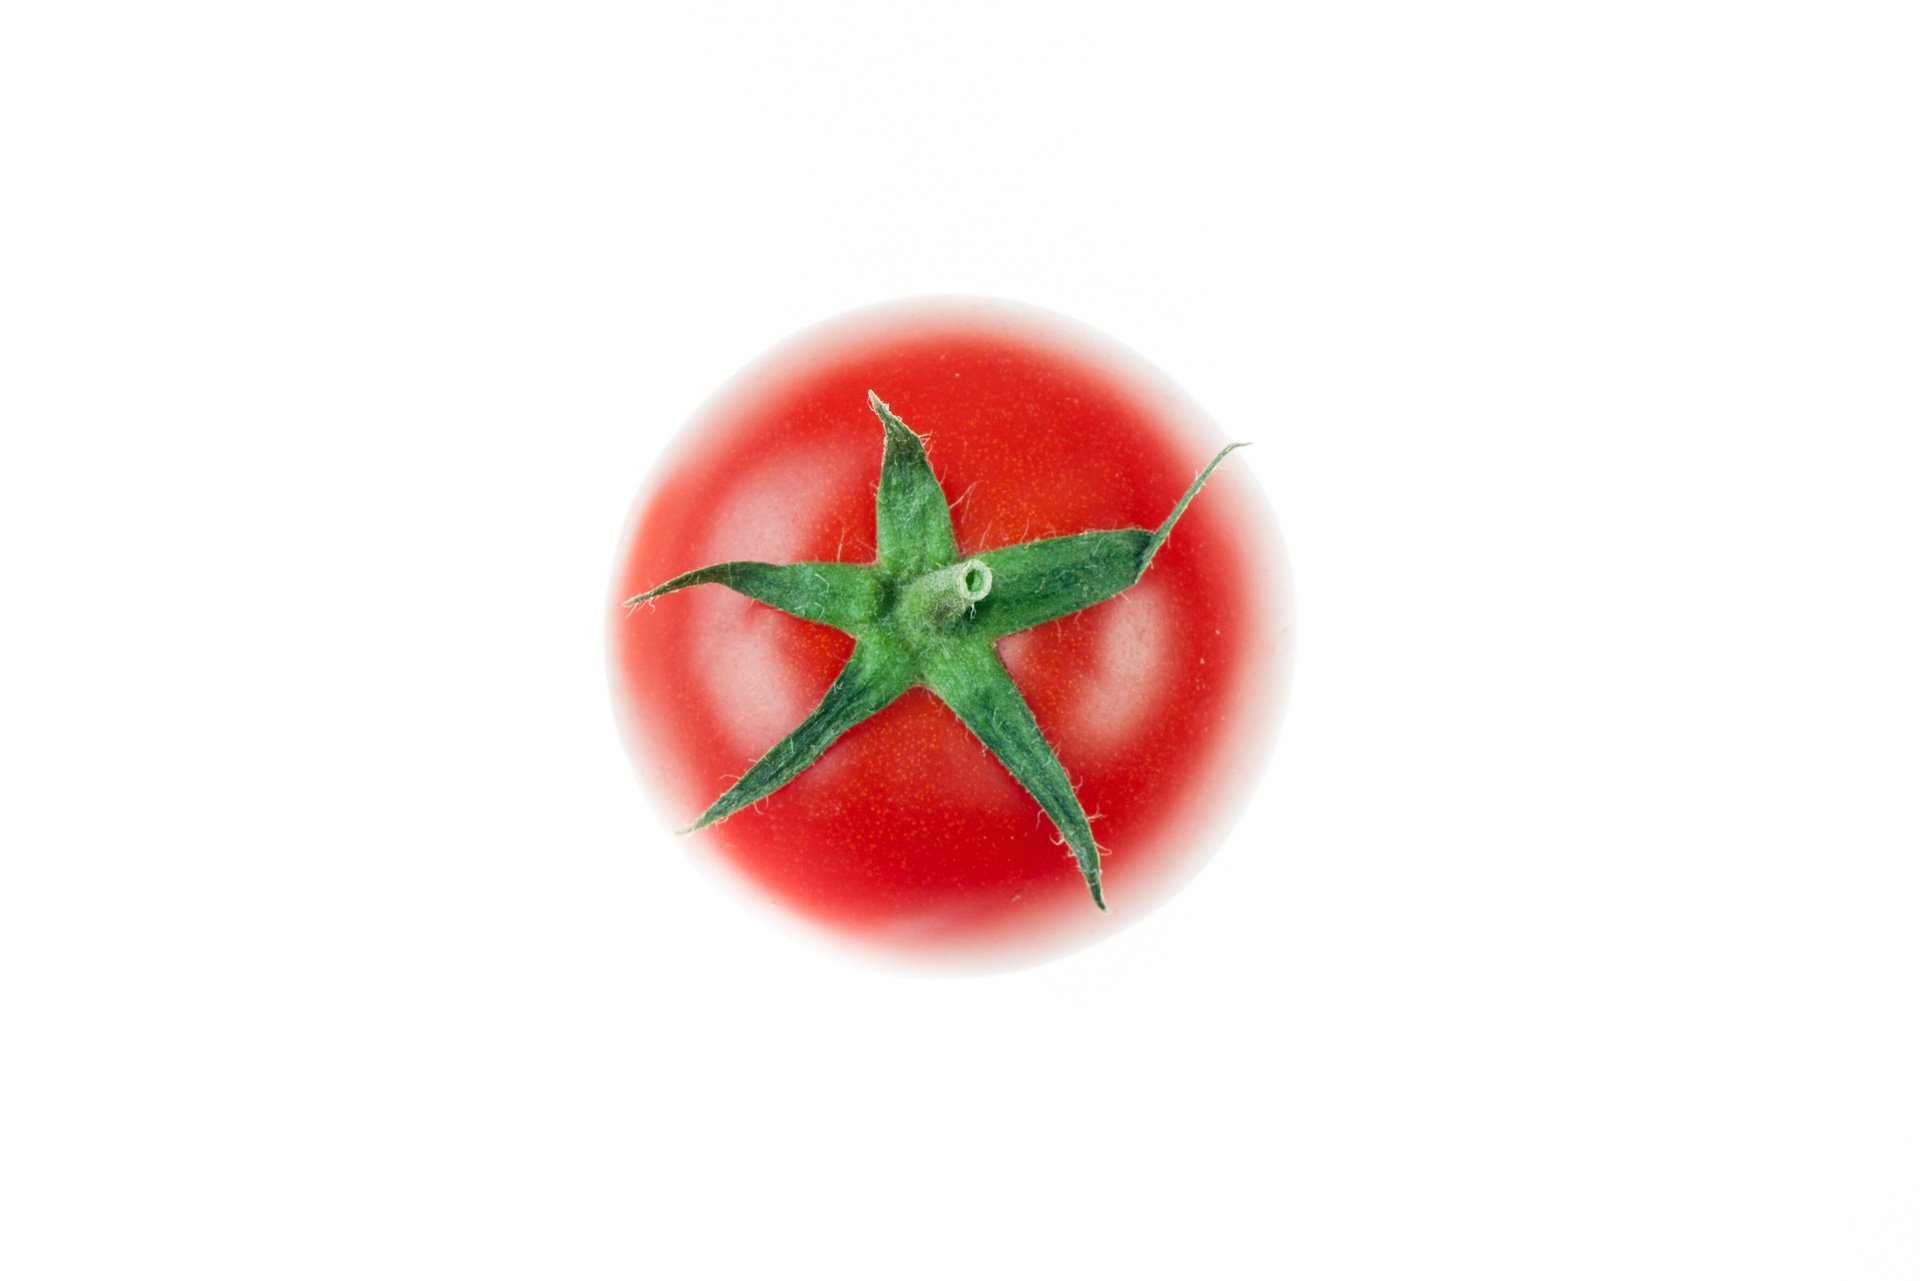 עגבניה אשכולות